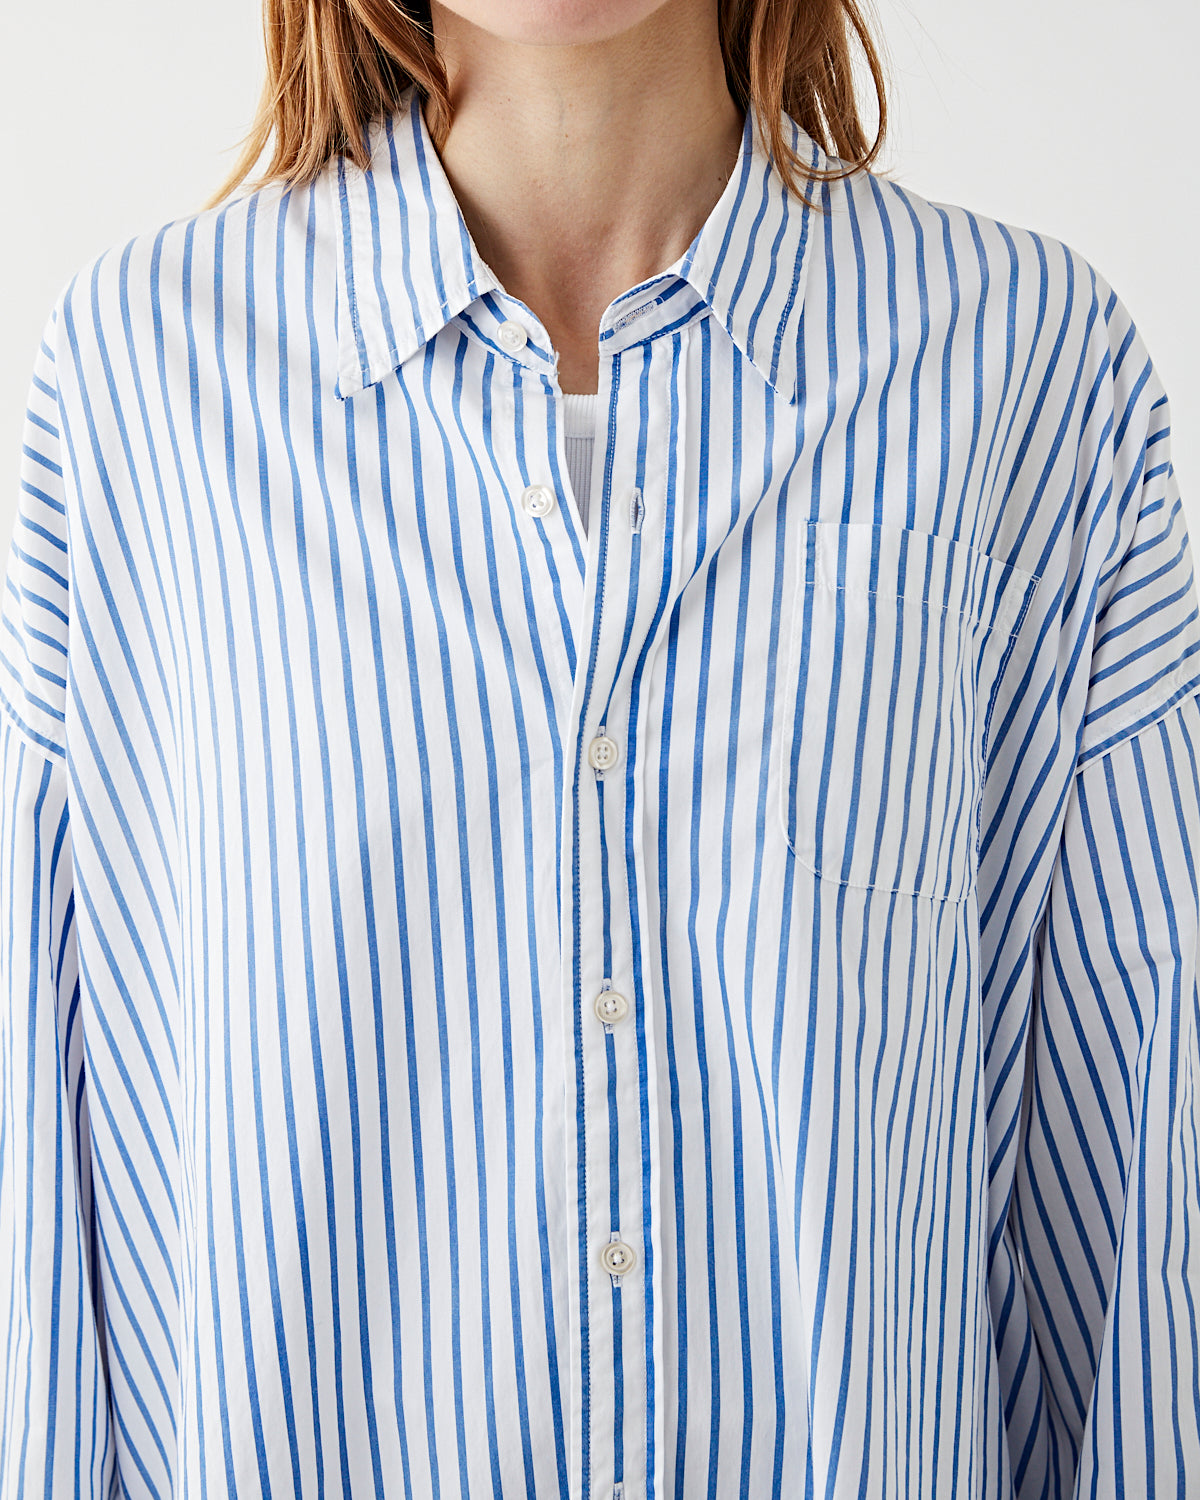 Denimist Button Front Shirt Blue Wide Stripe Shirt L/S Women